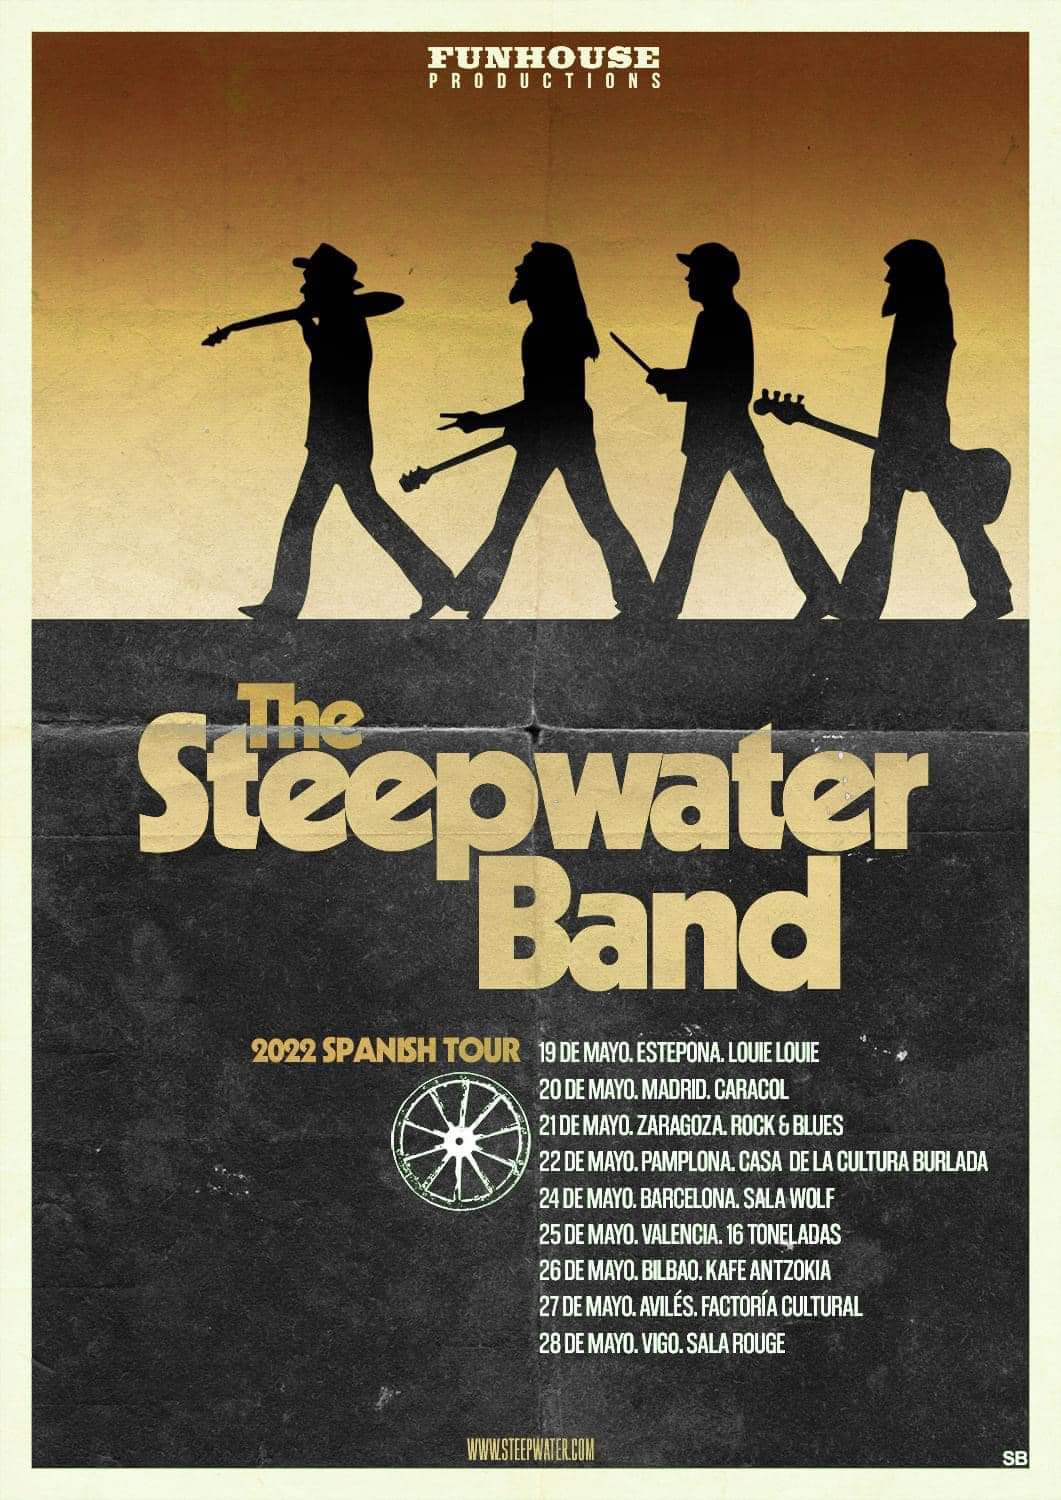 The Steepwater Band asolarán nuestro país en Mayo